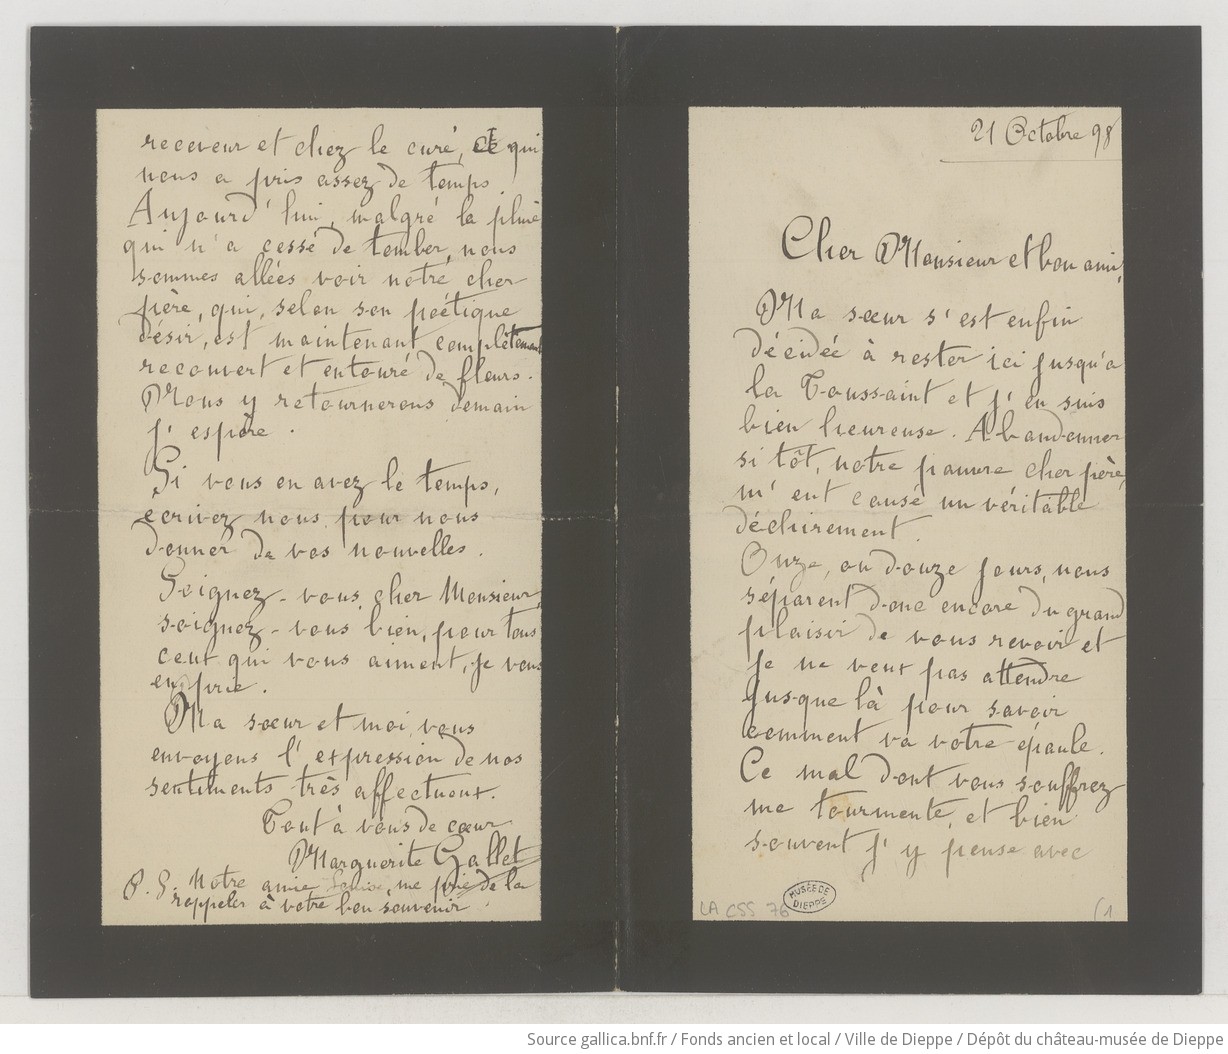 [36 lettres, 1 télégramme et 1 carte-lettre de Marguerite Gallet à Camille Saint-Saëns] (manuscrit autographe)